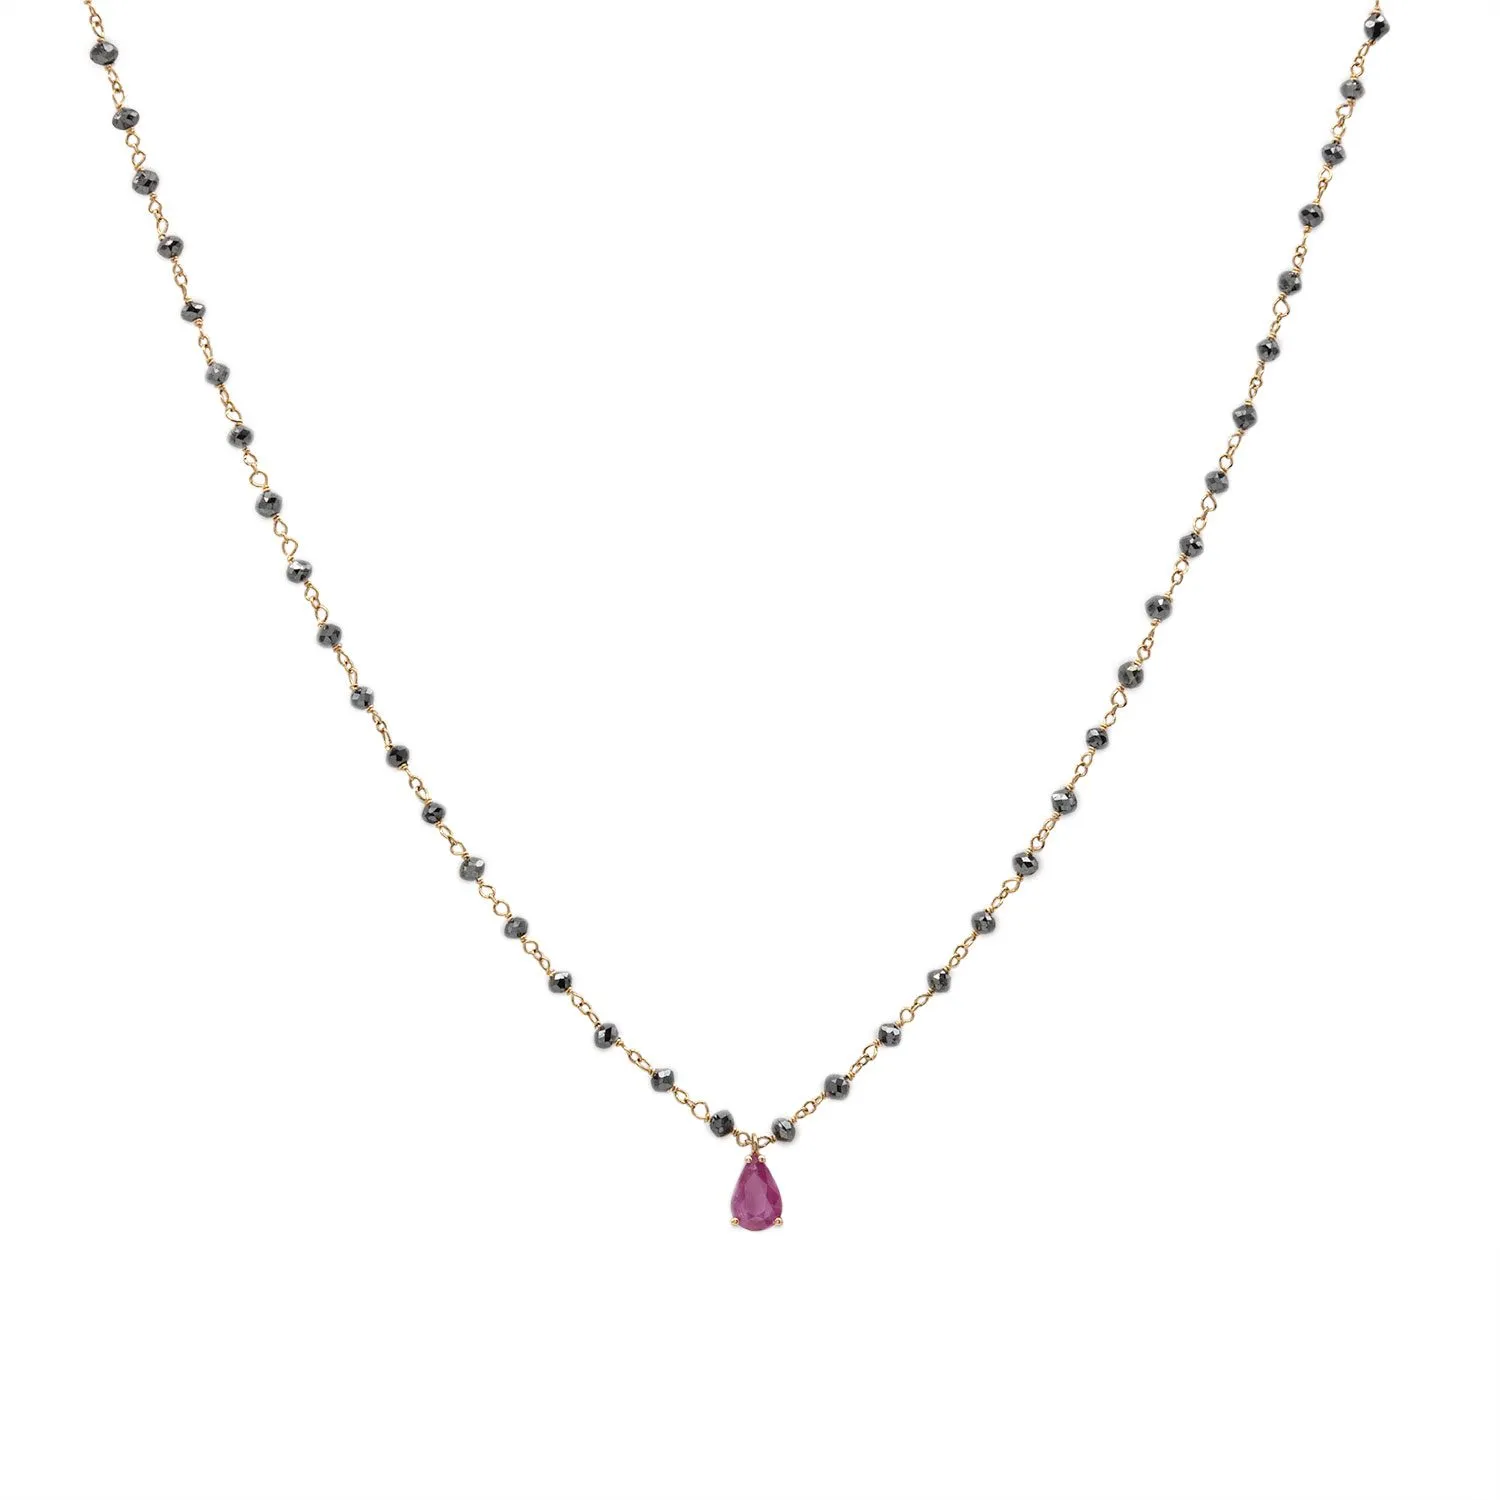 Der Atara-Halsreif besteht aus Roségold mit schwarzen Diamanten und einem Rubin